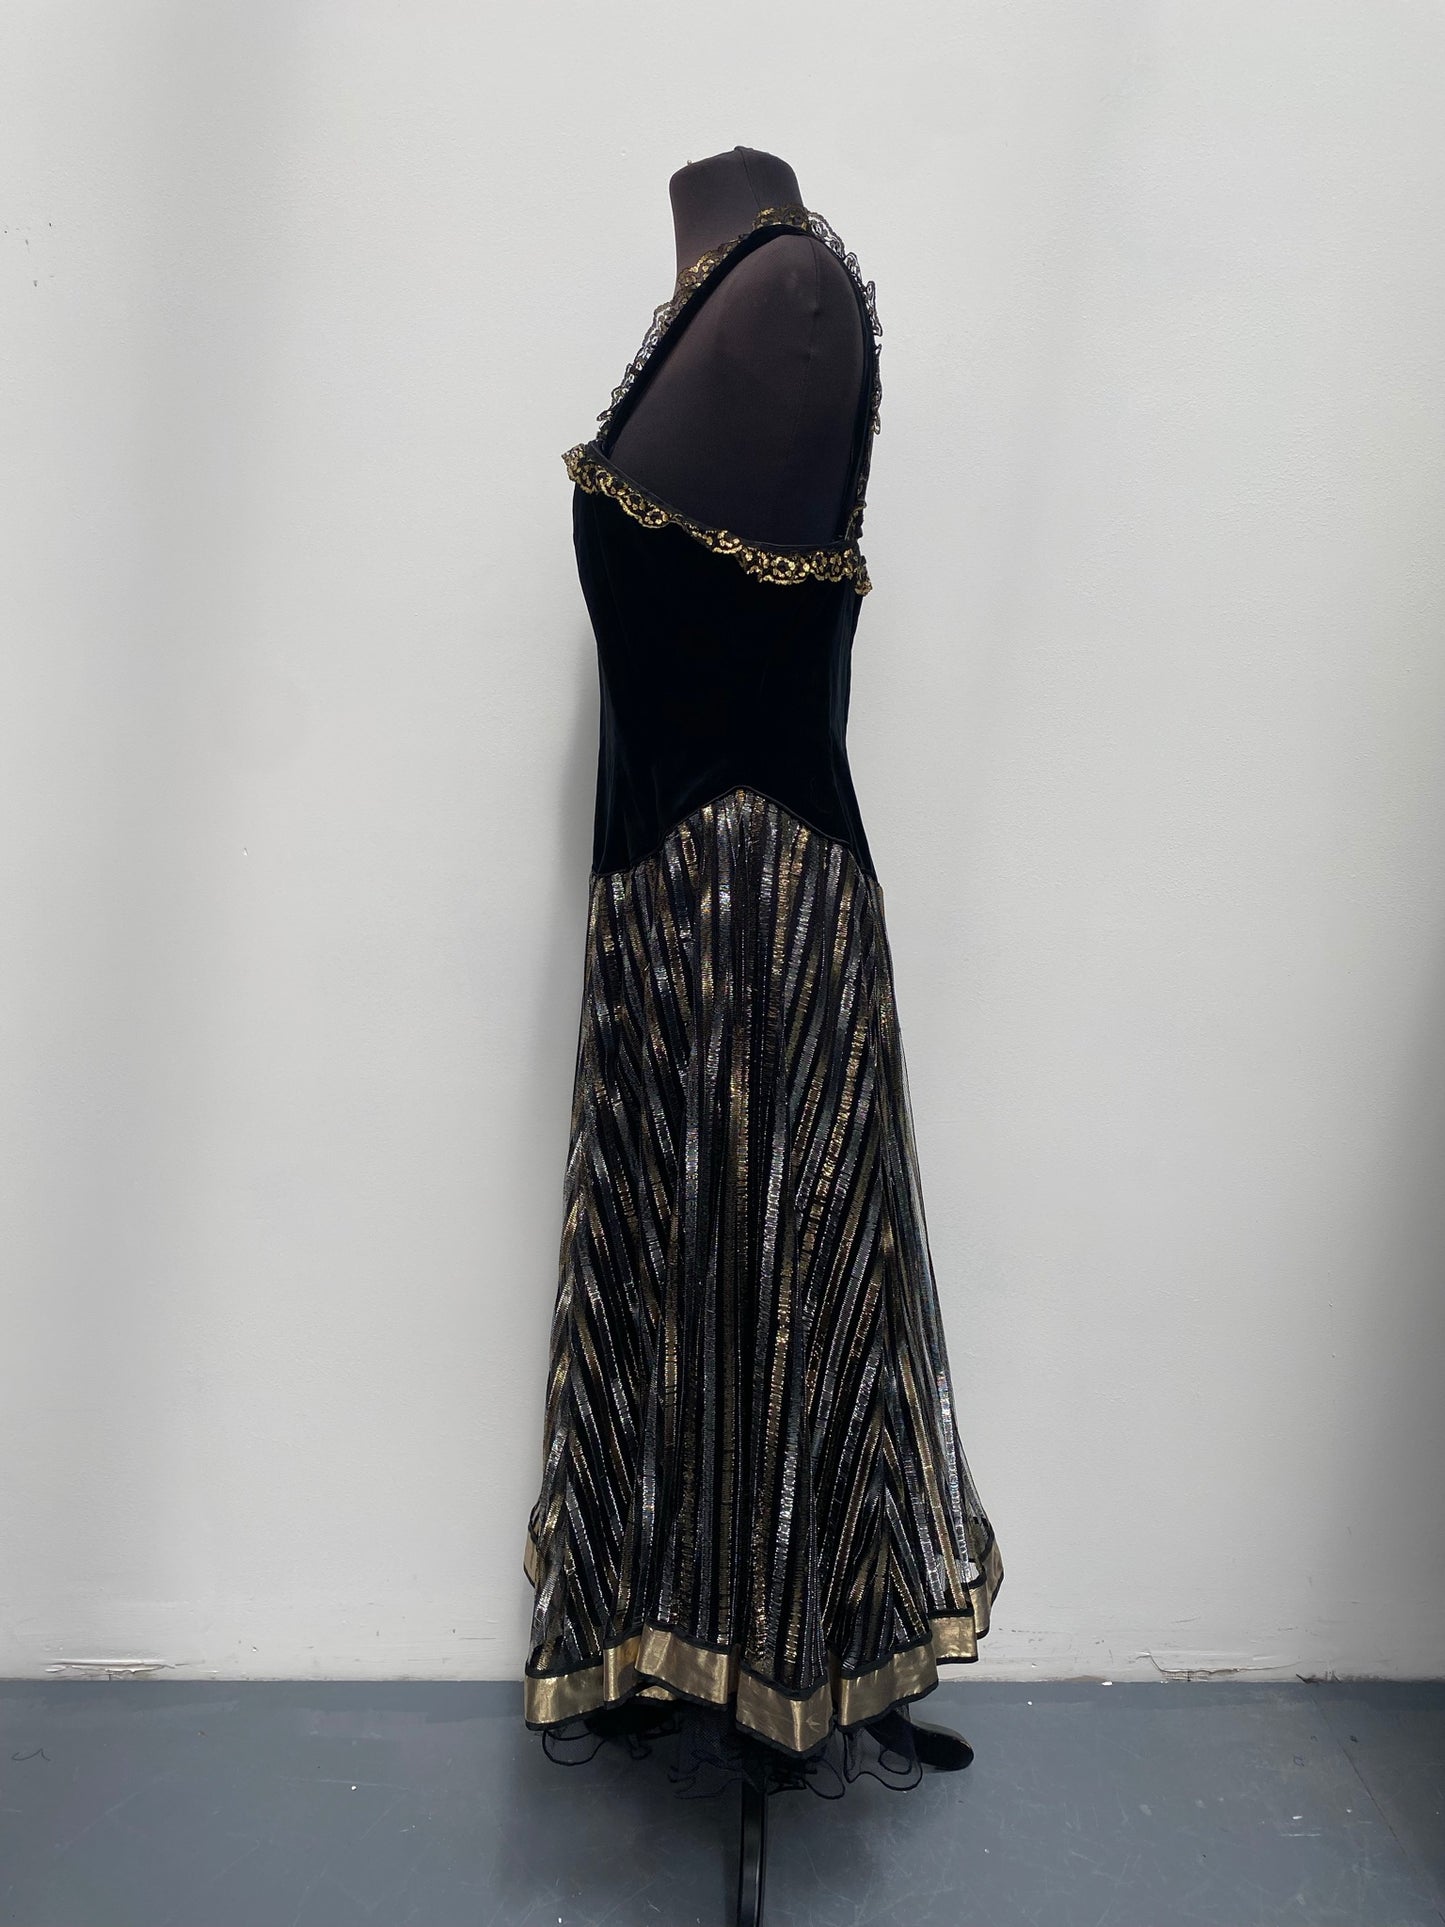 Black Gold Vintage David Butler Dress Size 10 - Showgirl/Saloon Girl Outfit